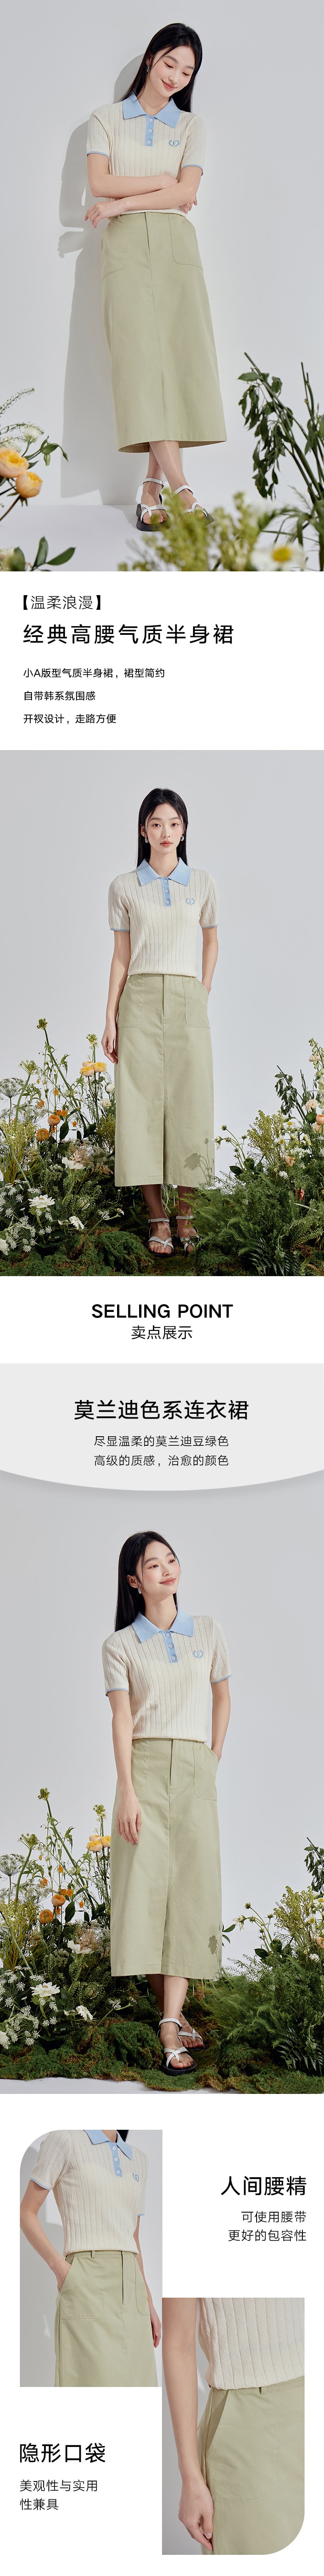 【中国直邮】HSPM 新款经典高腰气质半身裙 豆绿色 L